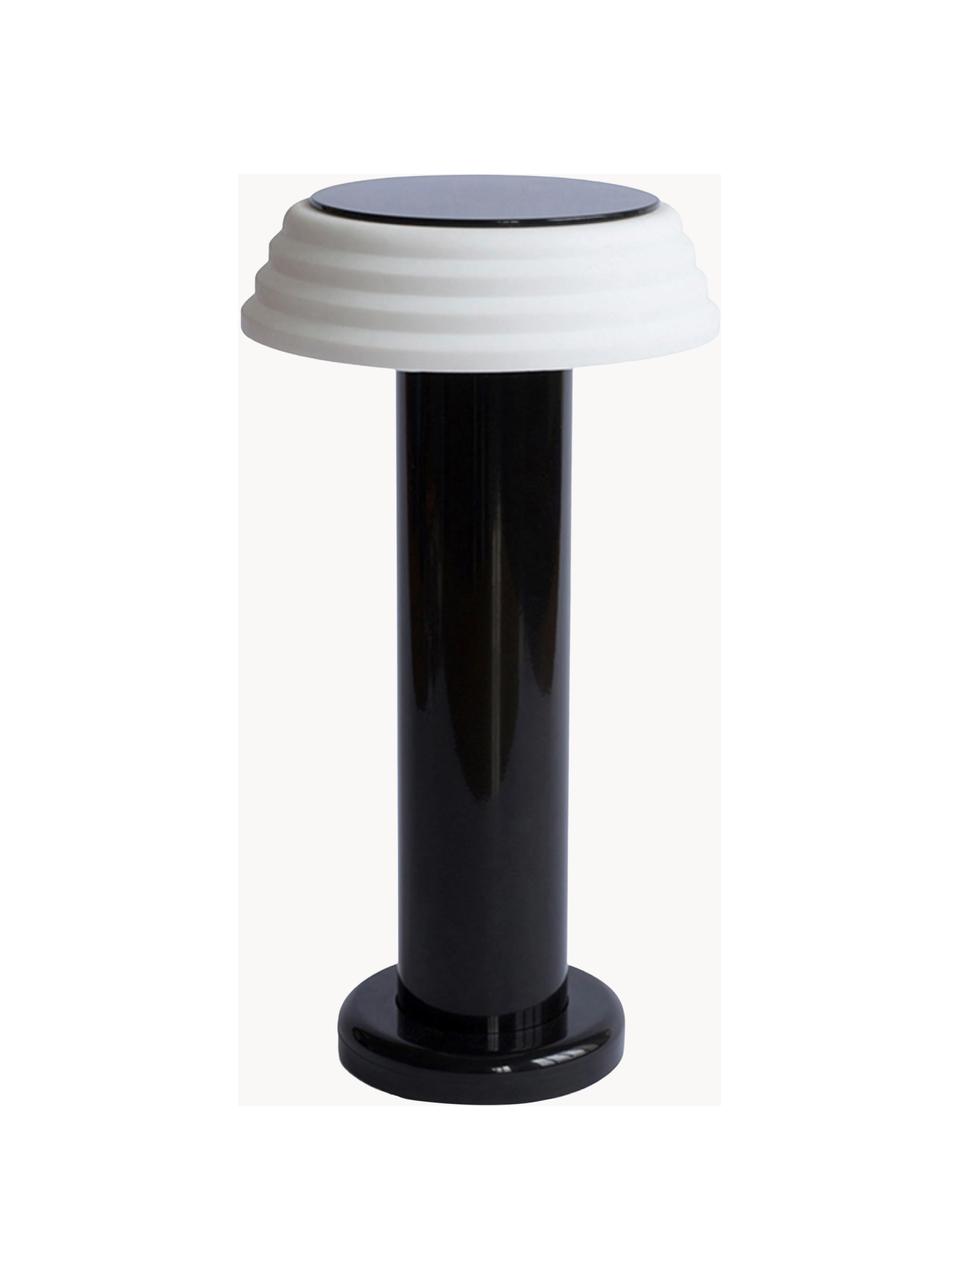 Mobilna lampa stołowa LED z funkcją przyciemniania PL1, Stelaż: metal powlekany, Czarny, biały, Ø 13 x W 24 cm